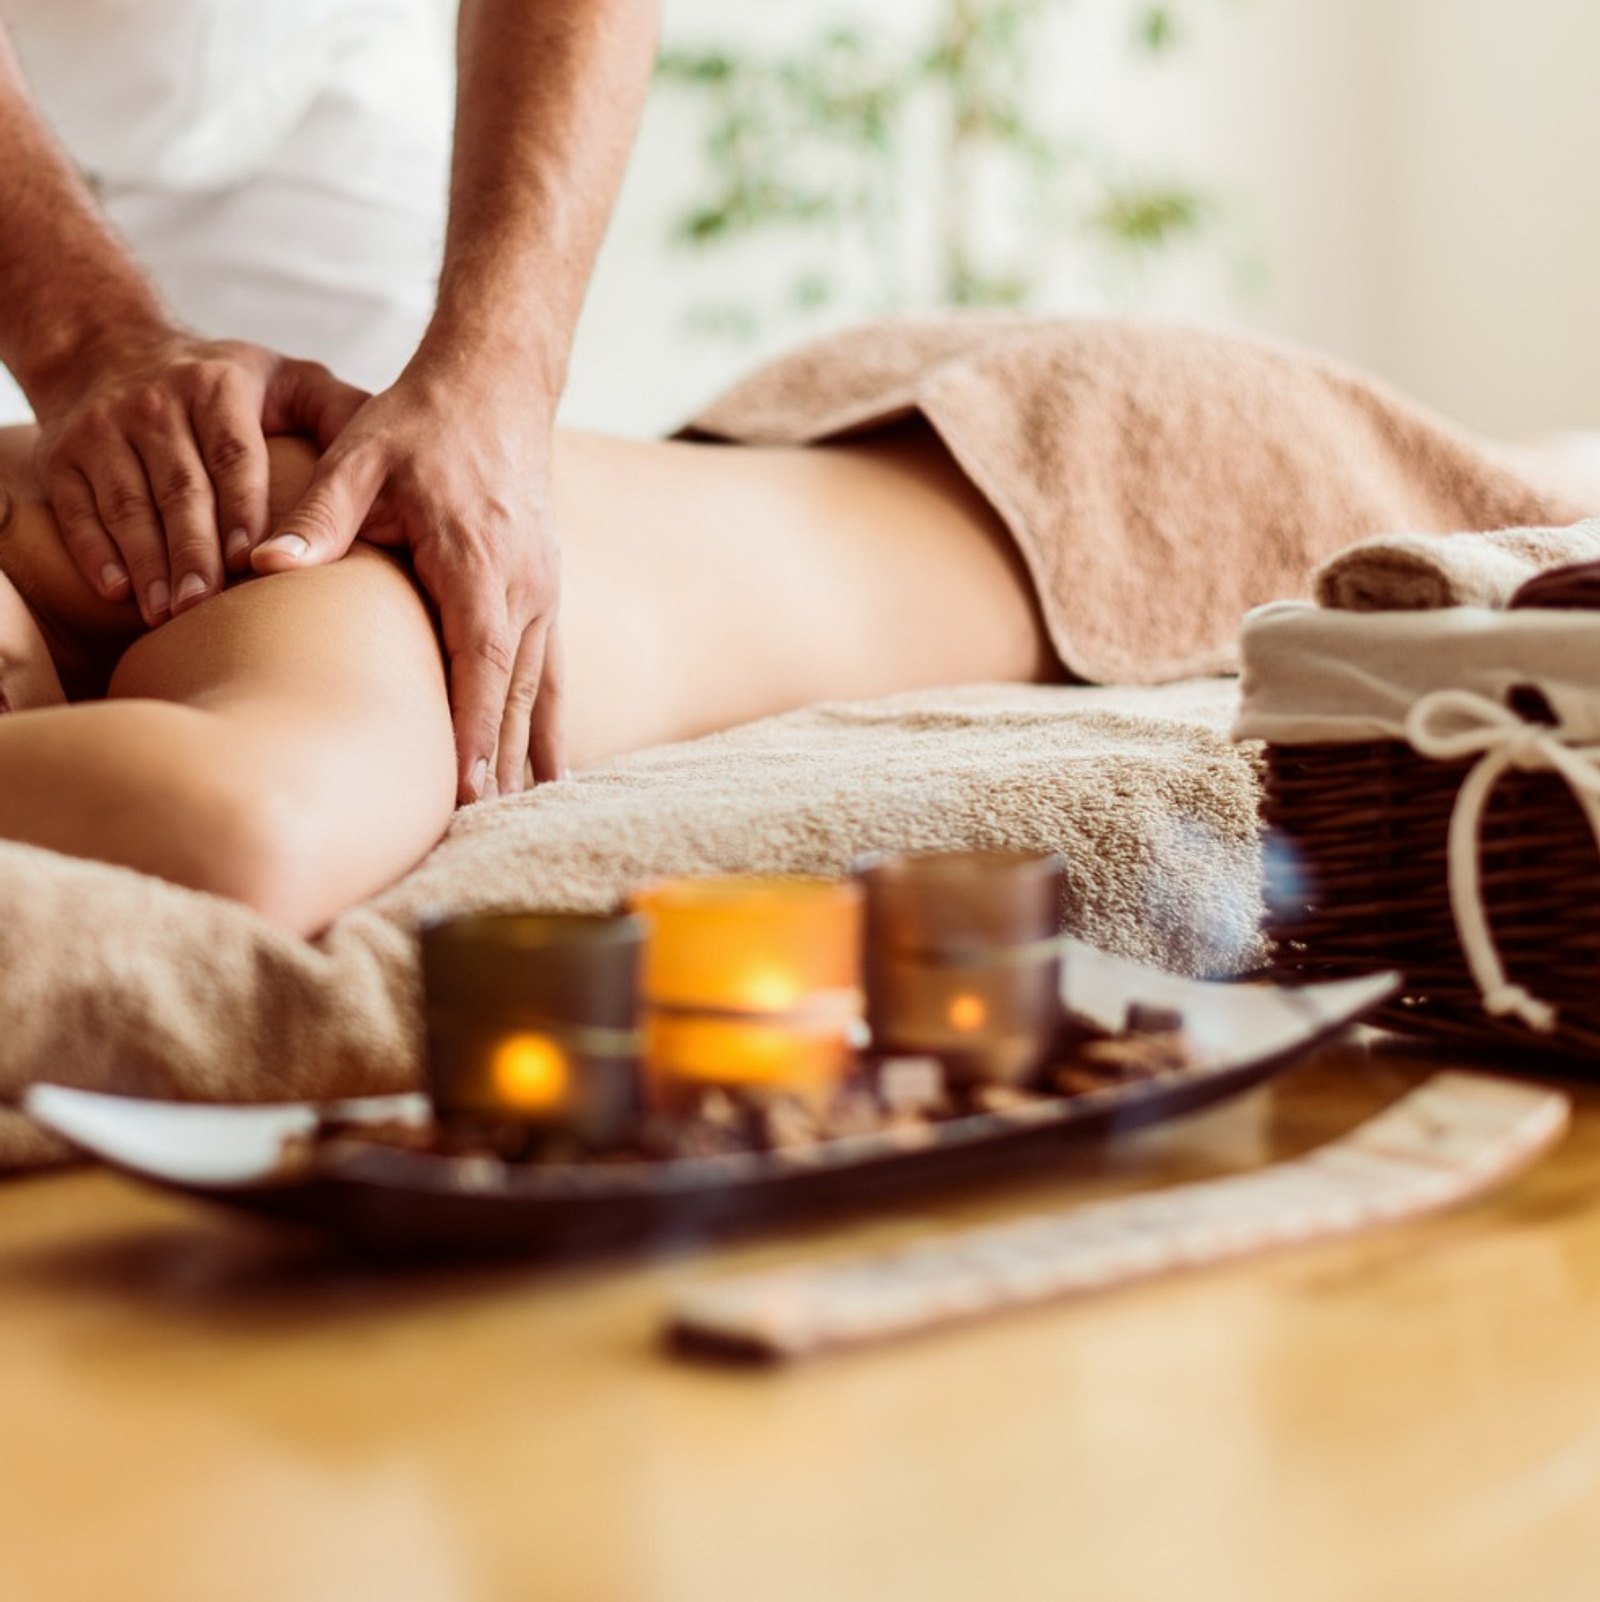 Erotische Massage für ihn: 6 Tipps für das heiße Vorspiel